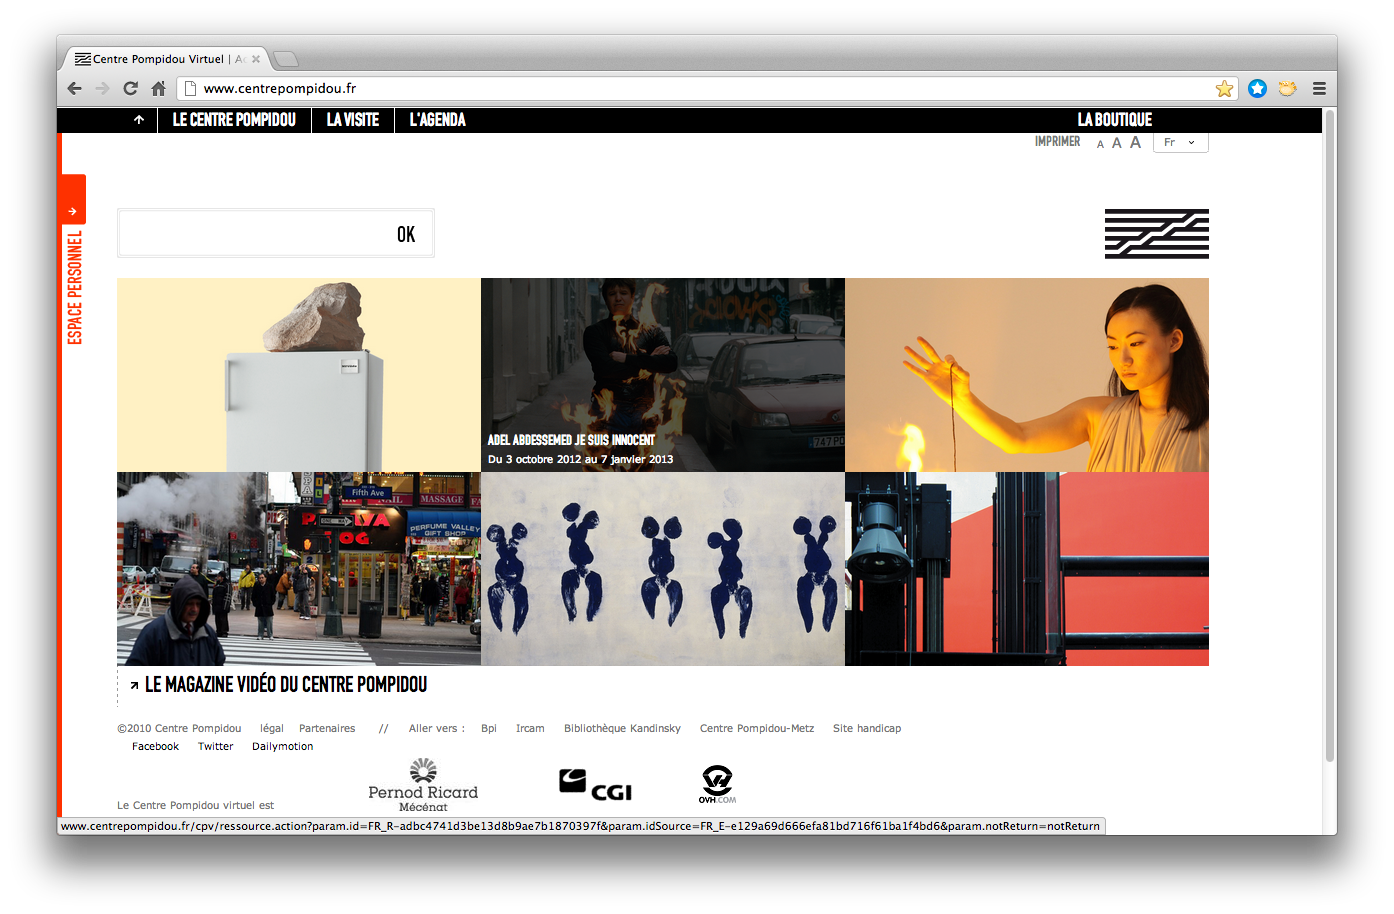 Capture d'écran, page d'accueil du site du Centre Pompidou, octobre 2012